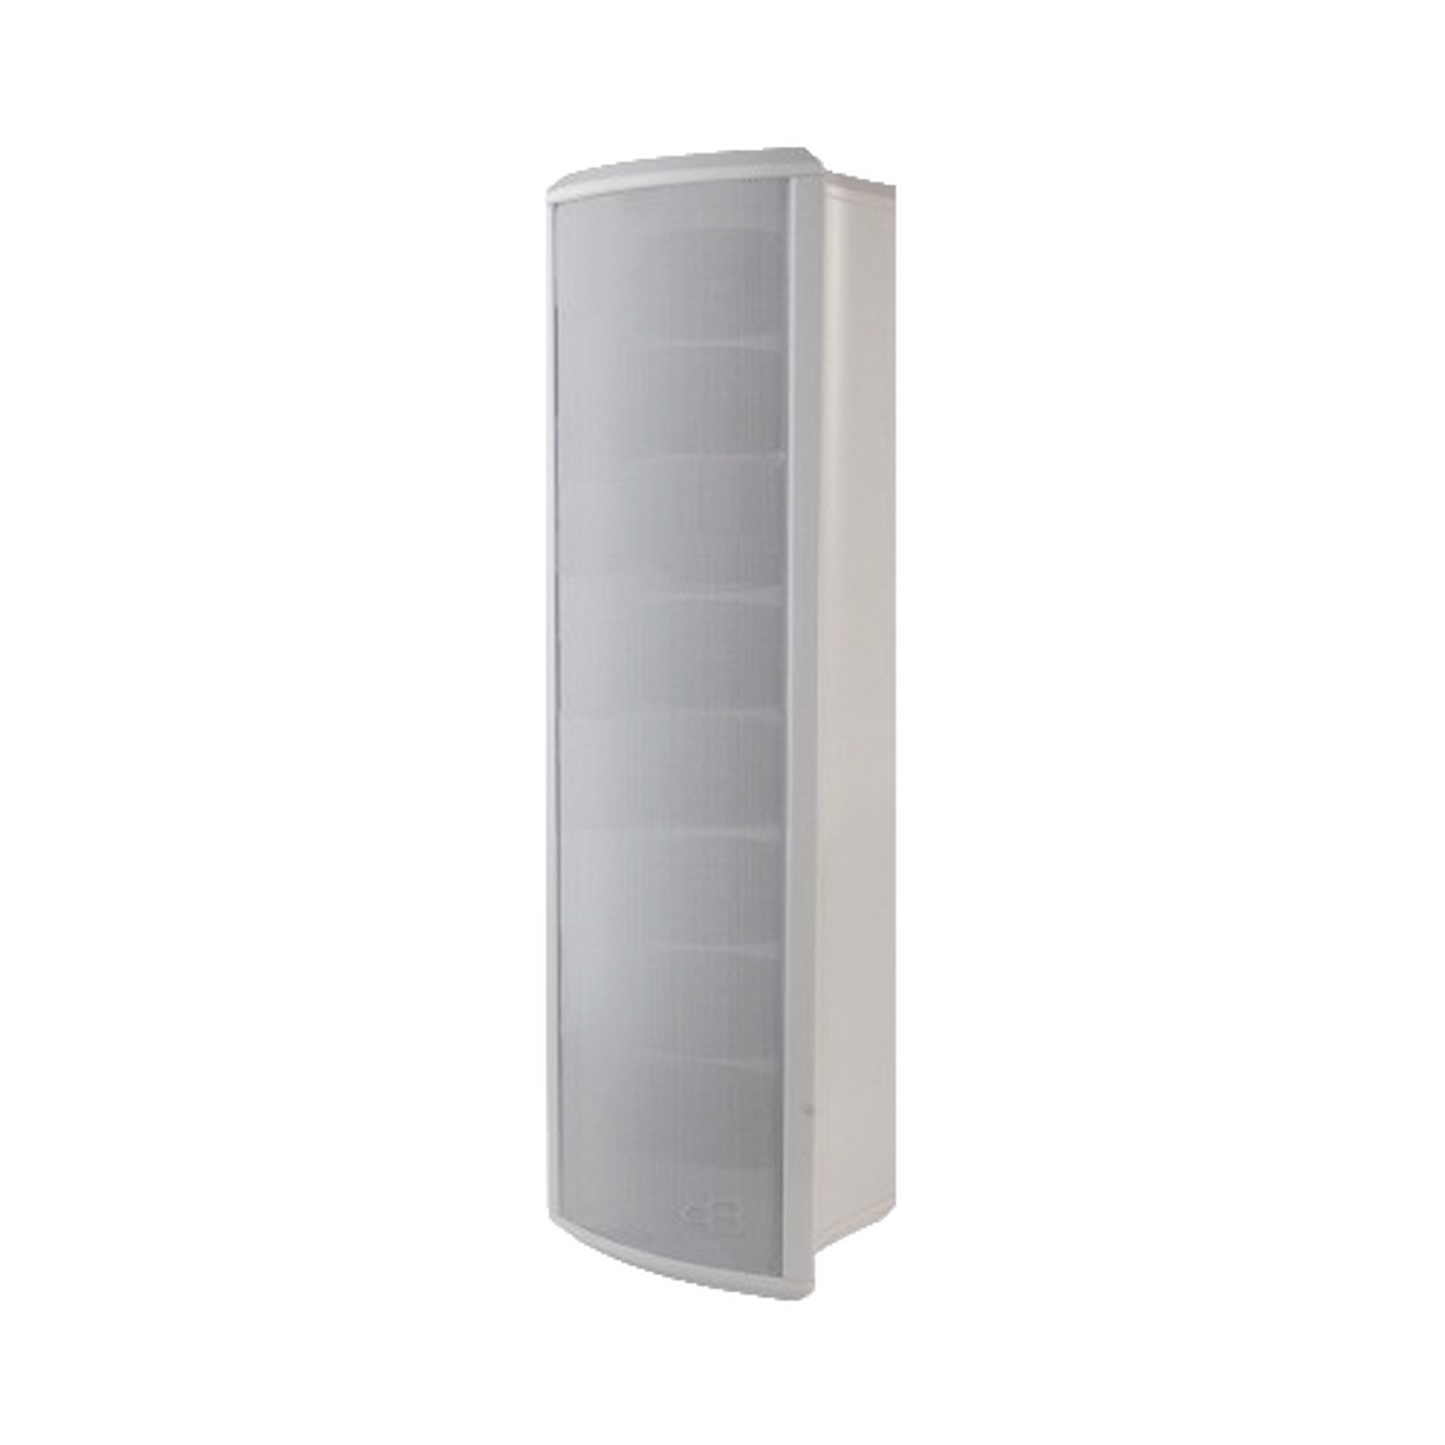 Altavoz Tipo Columna para Exterior, Configurable a 40, 20, 10 o 5 Watts, Color Blanco, Fabricado en Aluminio